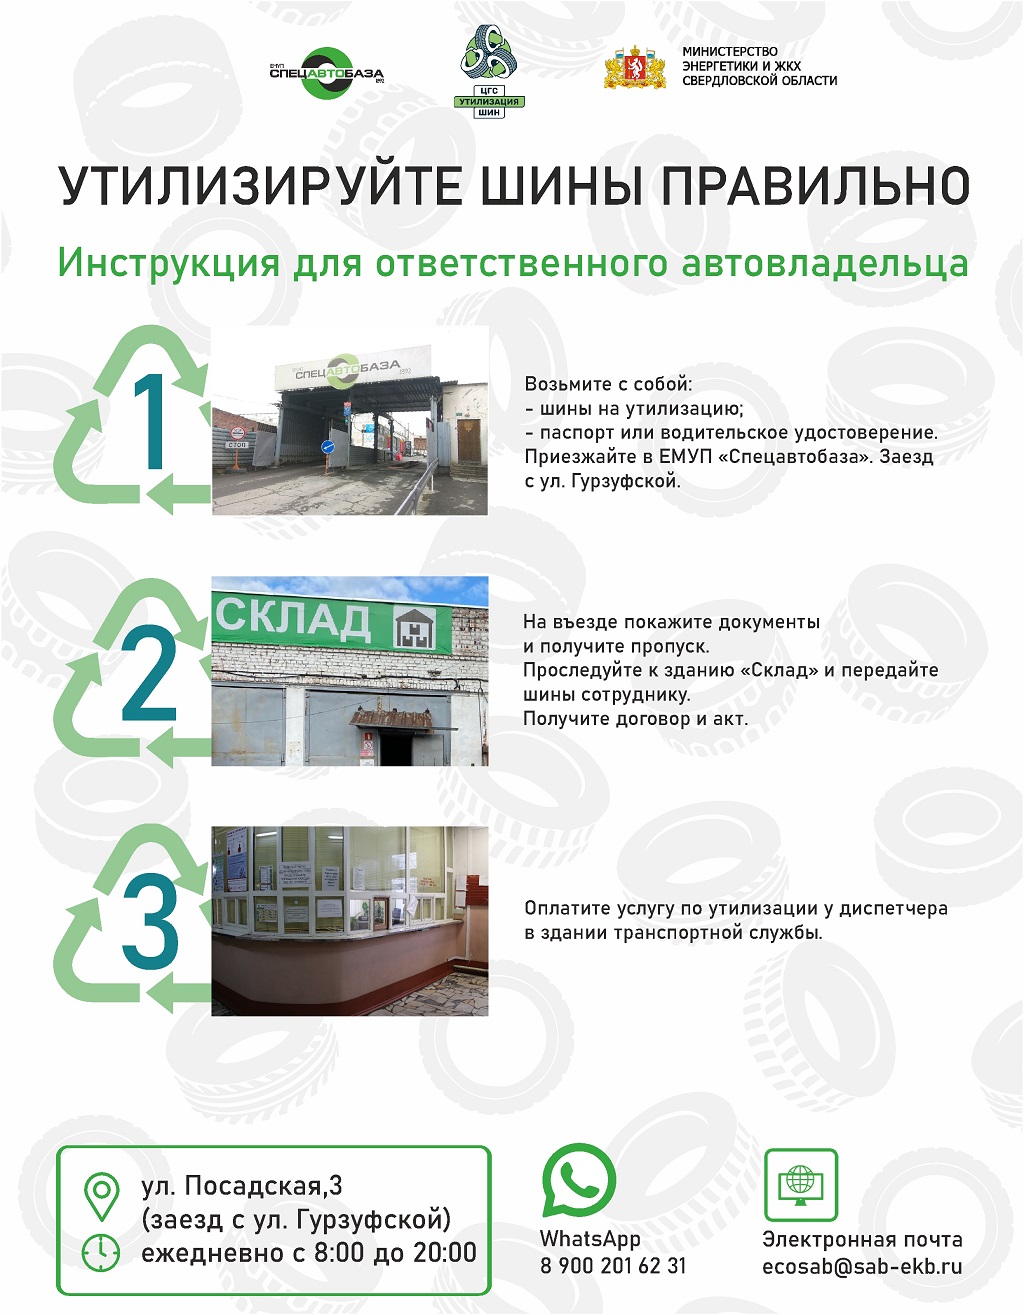 Новый День: В Екатеринбурге открыли пункт приема и переработки старых шин